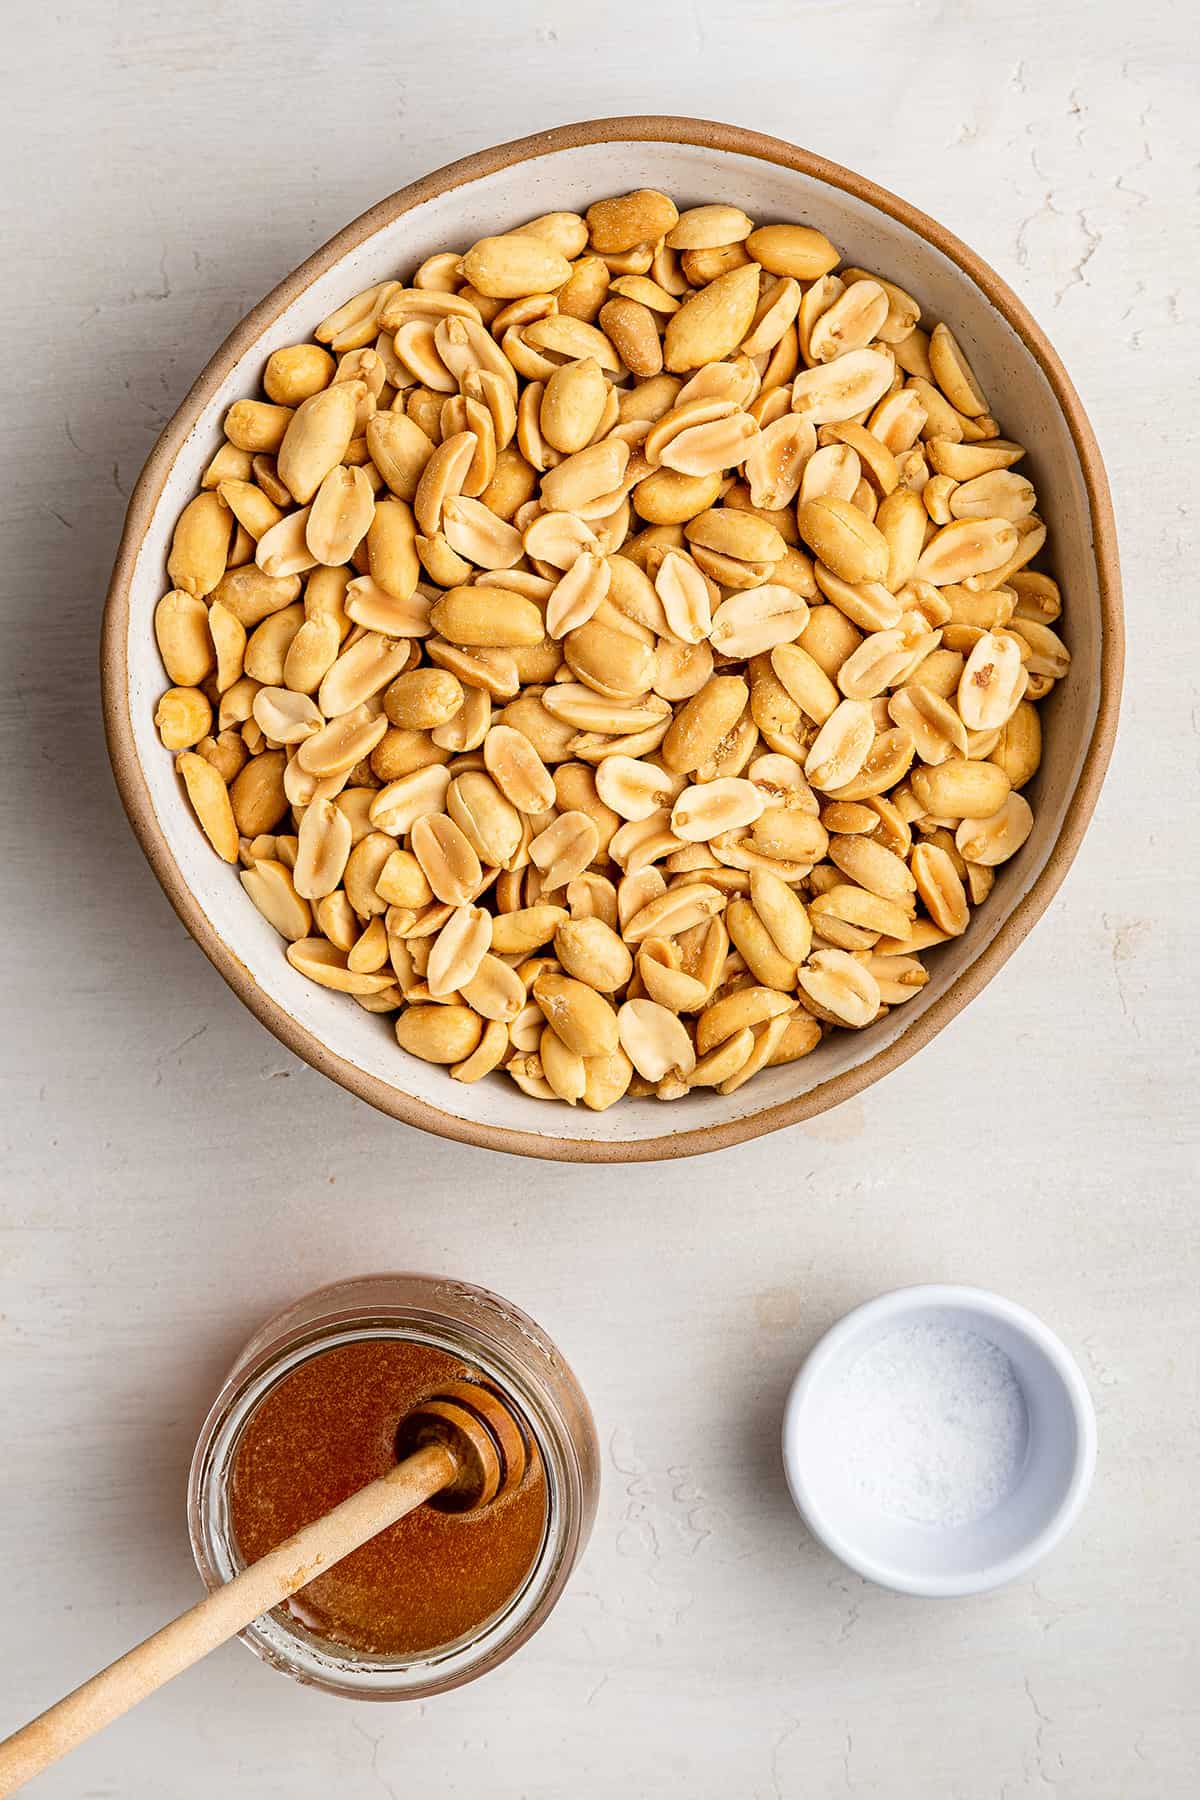 Visão aérea dos ingredientes necessários para a manteiga de amendoim torrada com mel: uma tigela de amendoim, uma jarra de mel com um agitador de madeira e uma tigela de sal